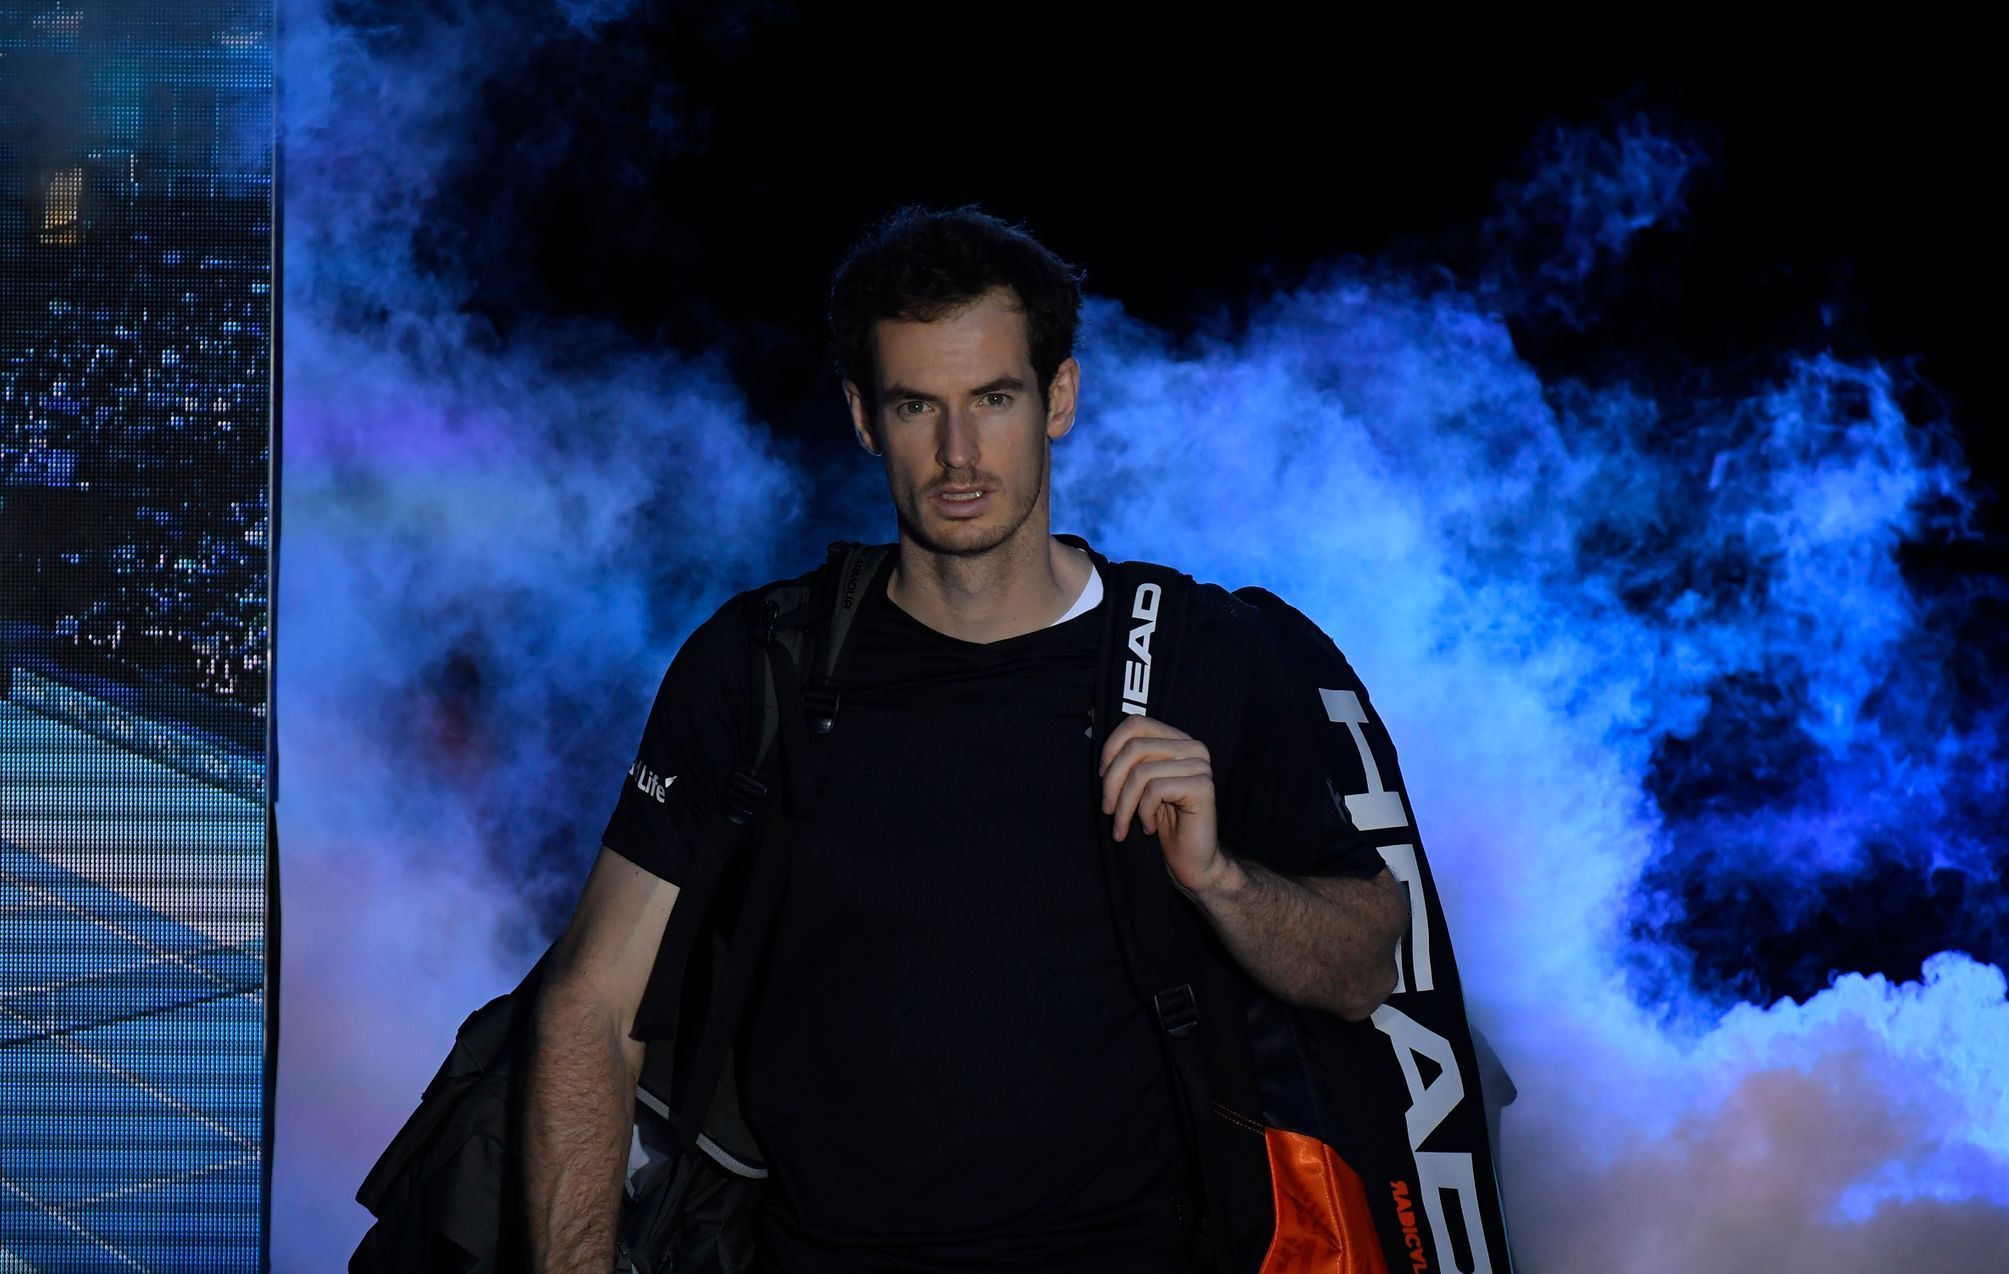 Finále Turnaje mistrů 2016: Andy Murray